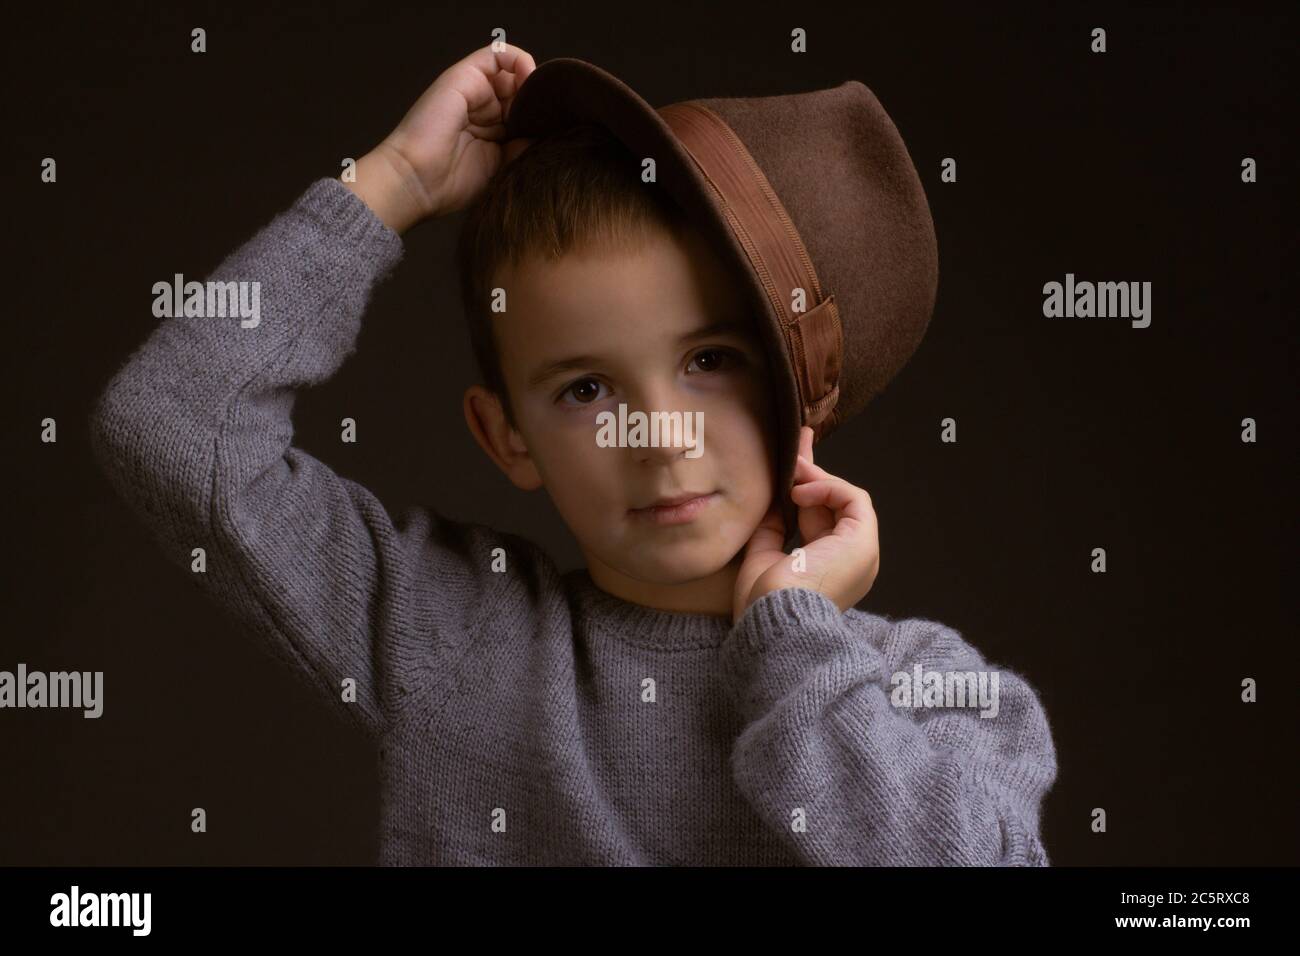 Studio ritratto di un ragazzo in un maglione grigio, su sfondo nero, che tiene un cappello marrone accanto alla sposa Foto Stock